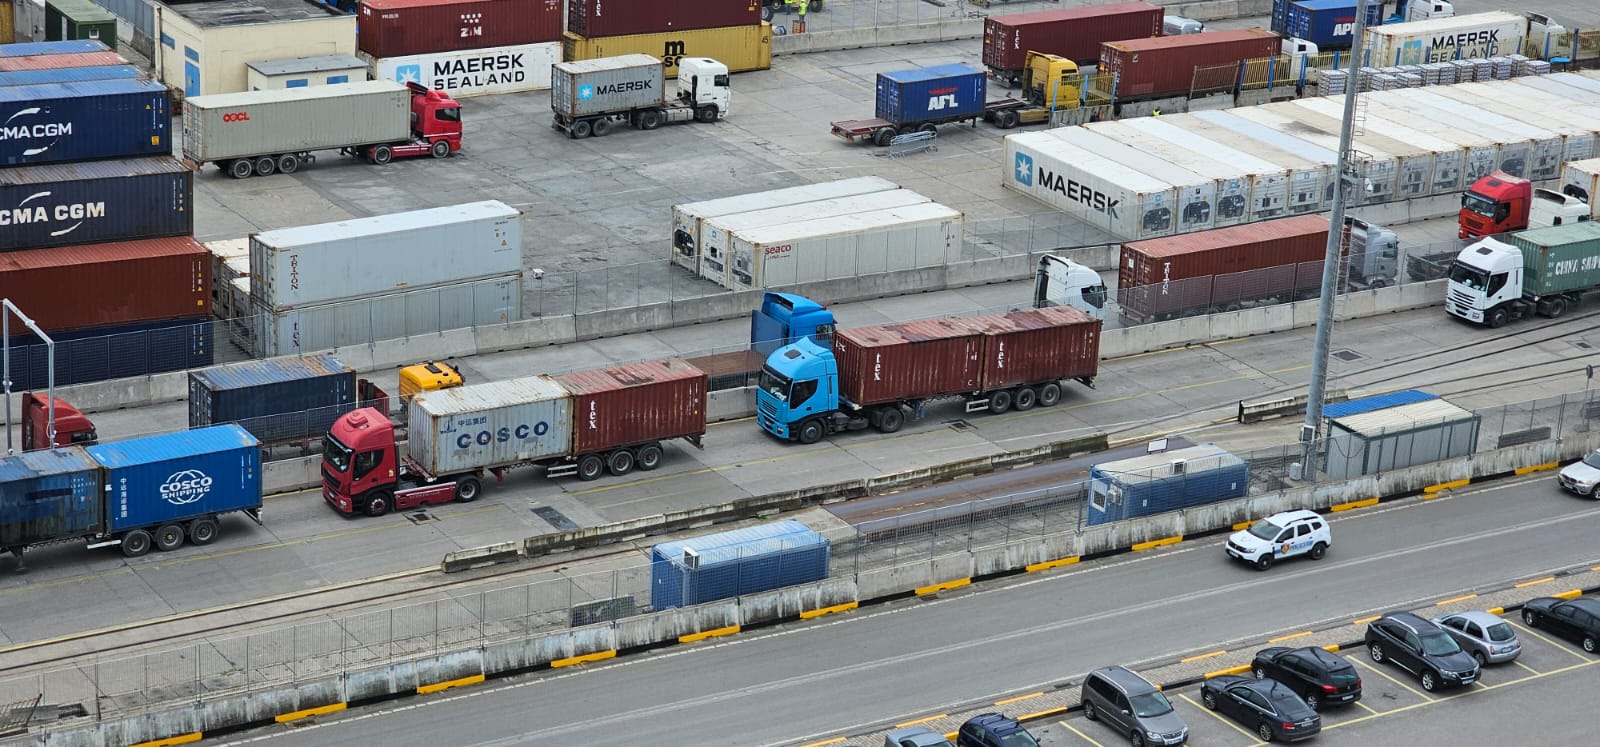 Anijet në terminalin e kontejnerëve të bllokuara deri në 3 ditë për shkarkim, APD: Do shtojmë mjetet